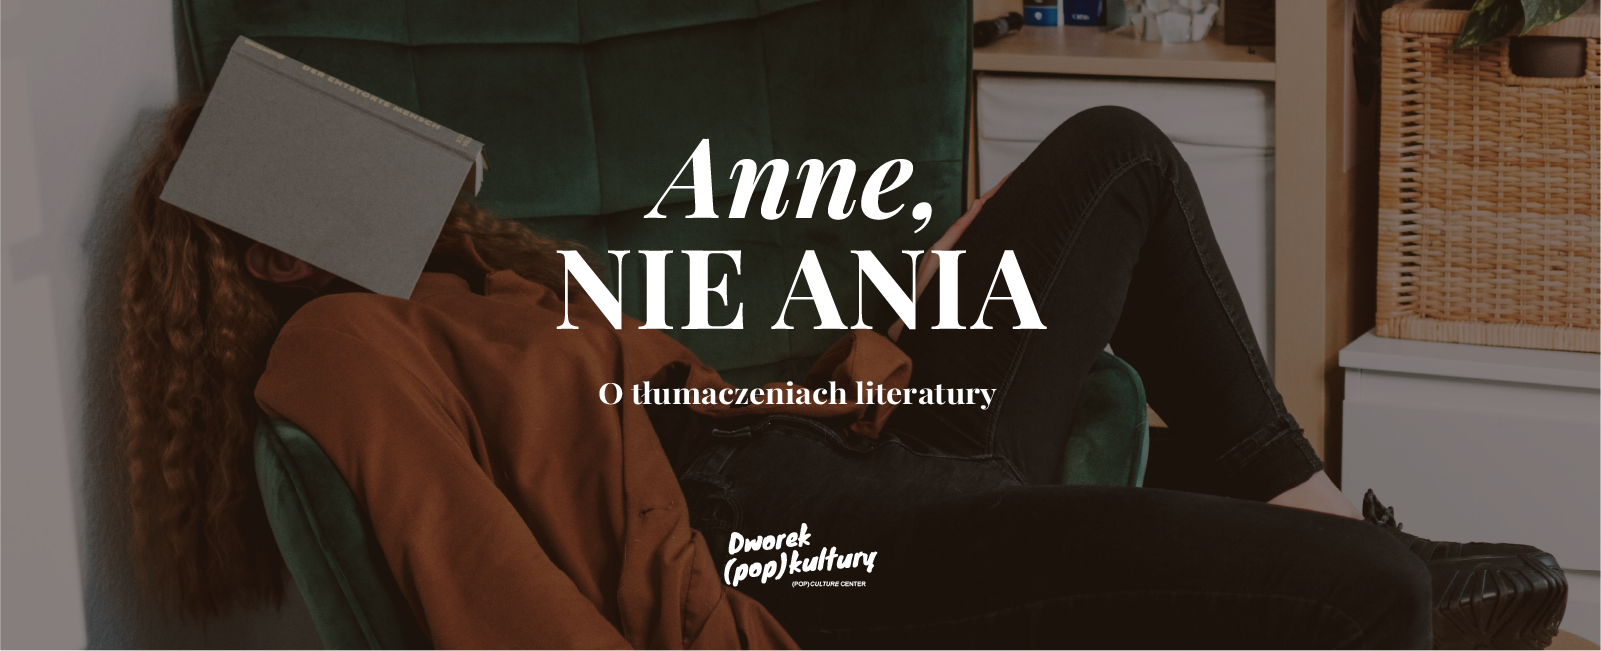 Anne, nie Ania. O tłumaczeniach literatury | Dworek (pop)kultury